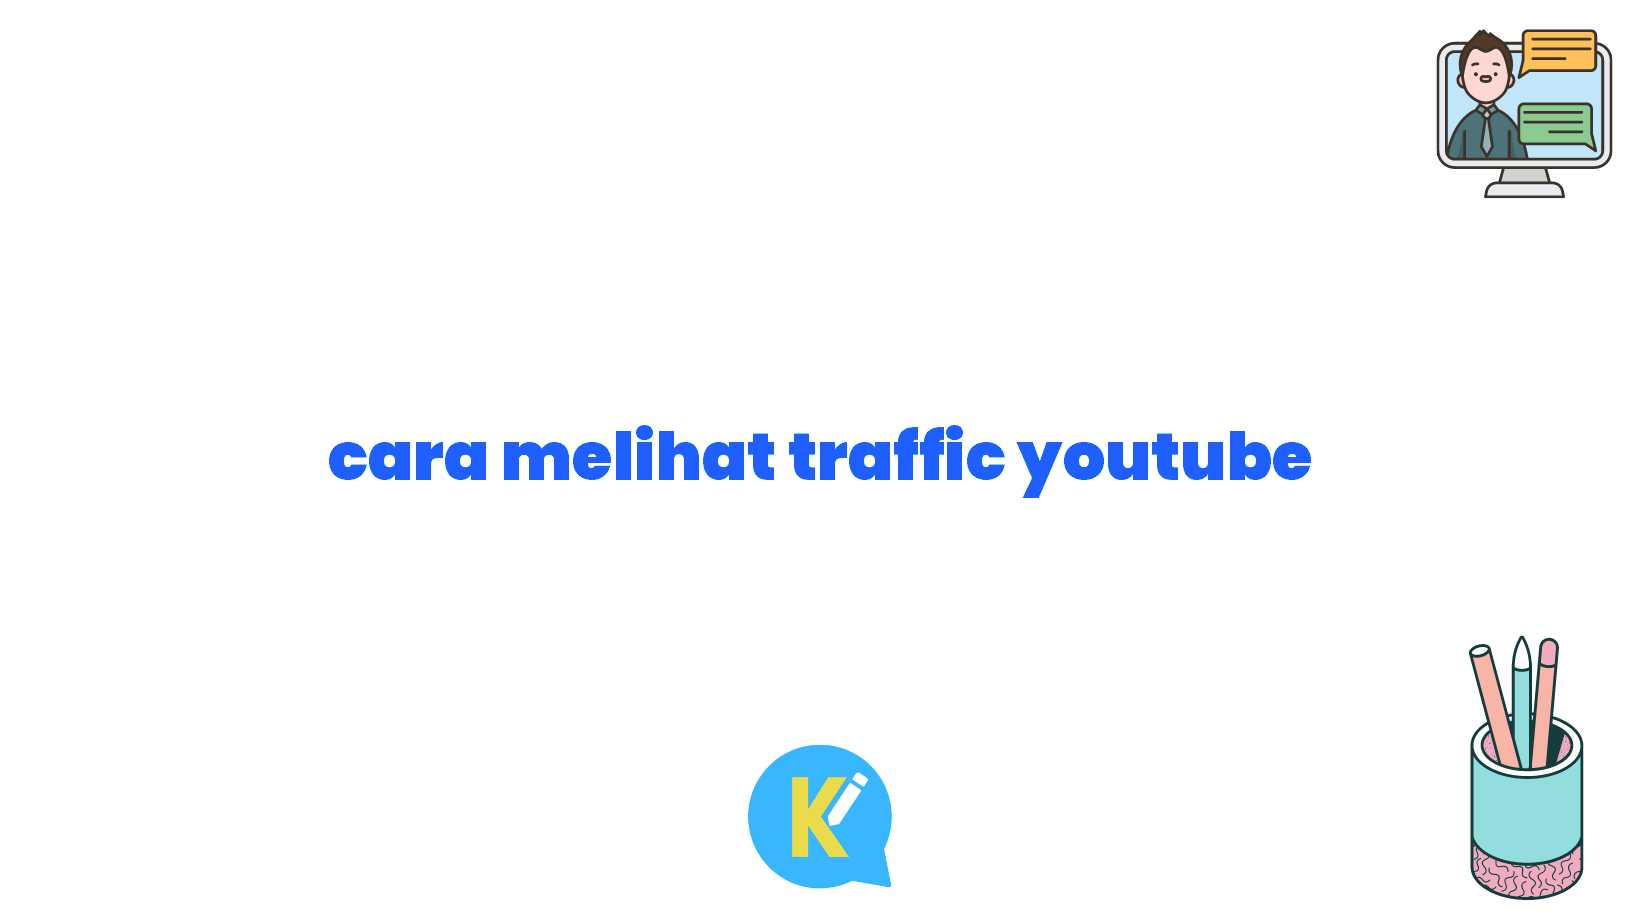 cara melihat traffic youtube